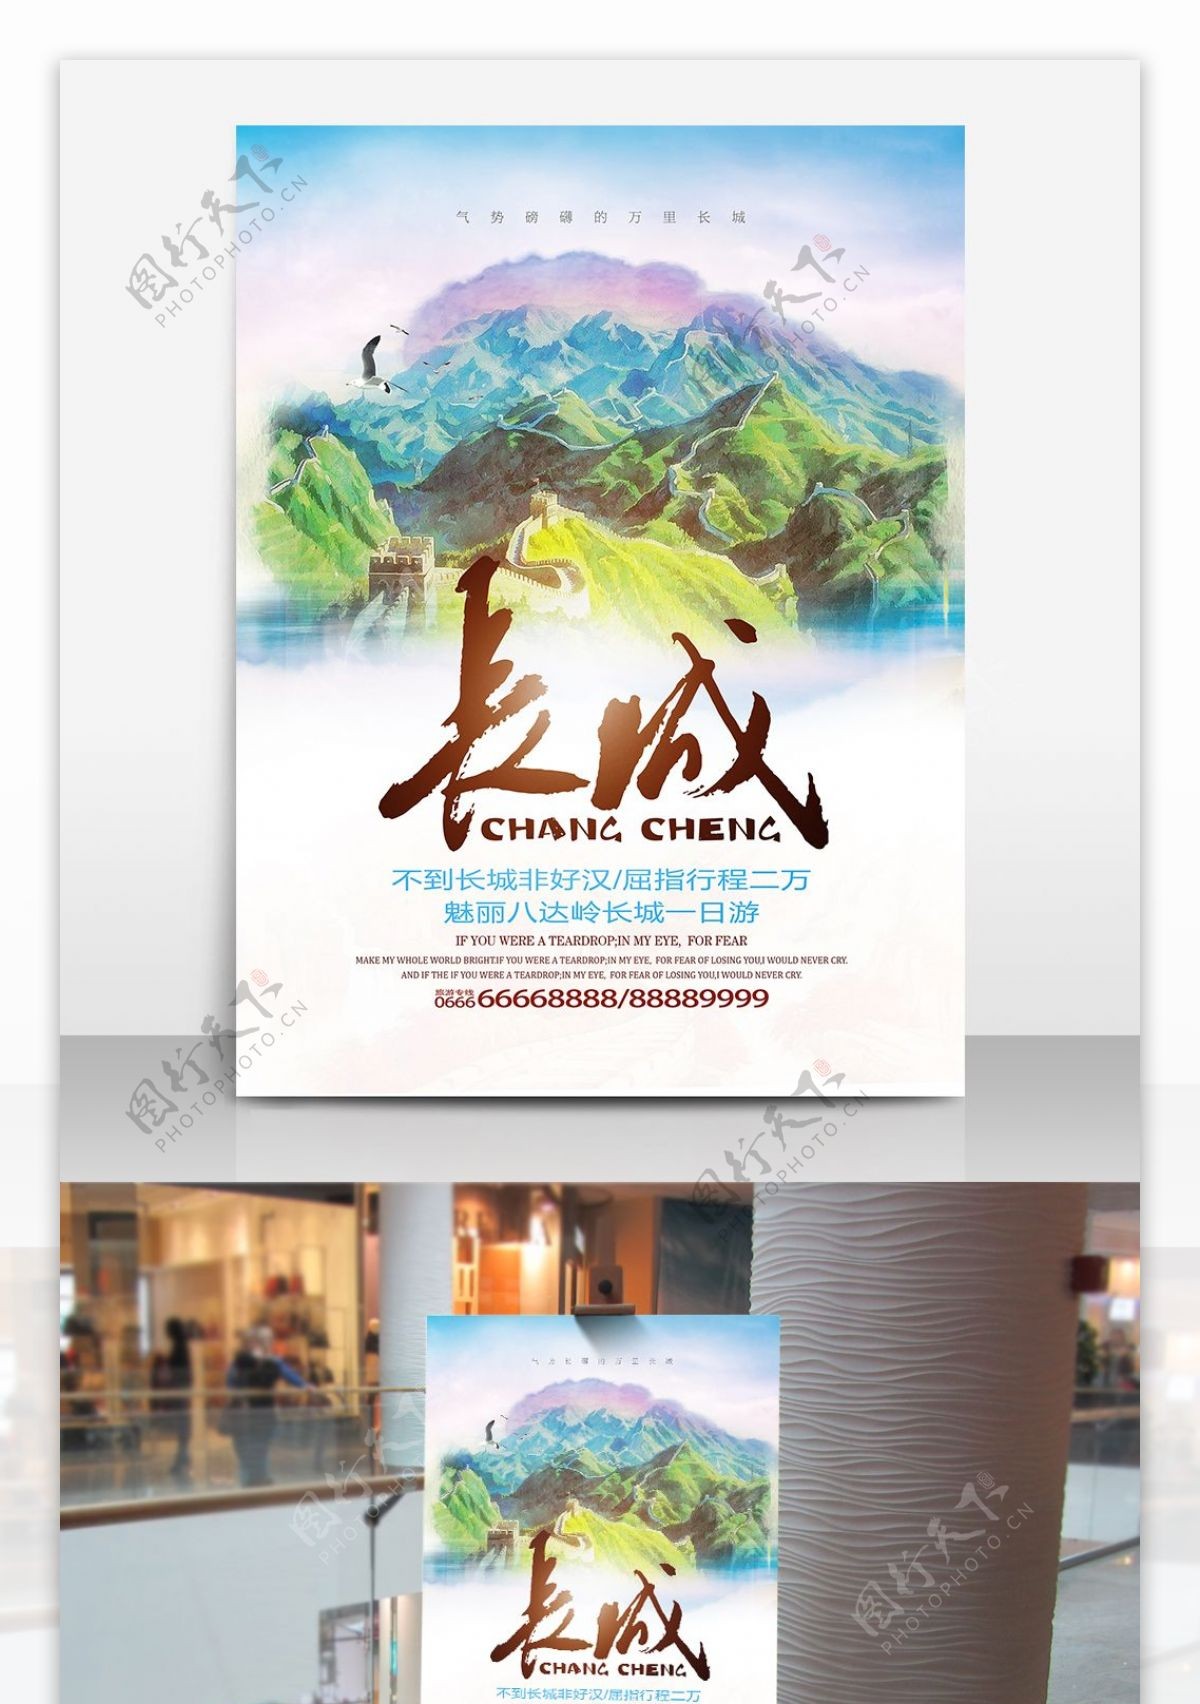 长城一日游海报设计旅游海报旅行社宣传海报设计